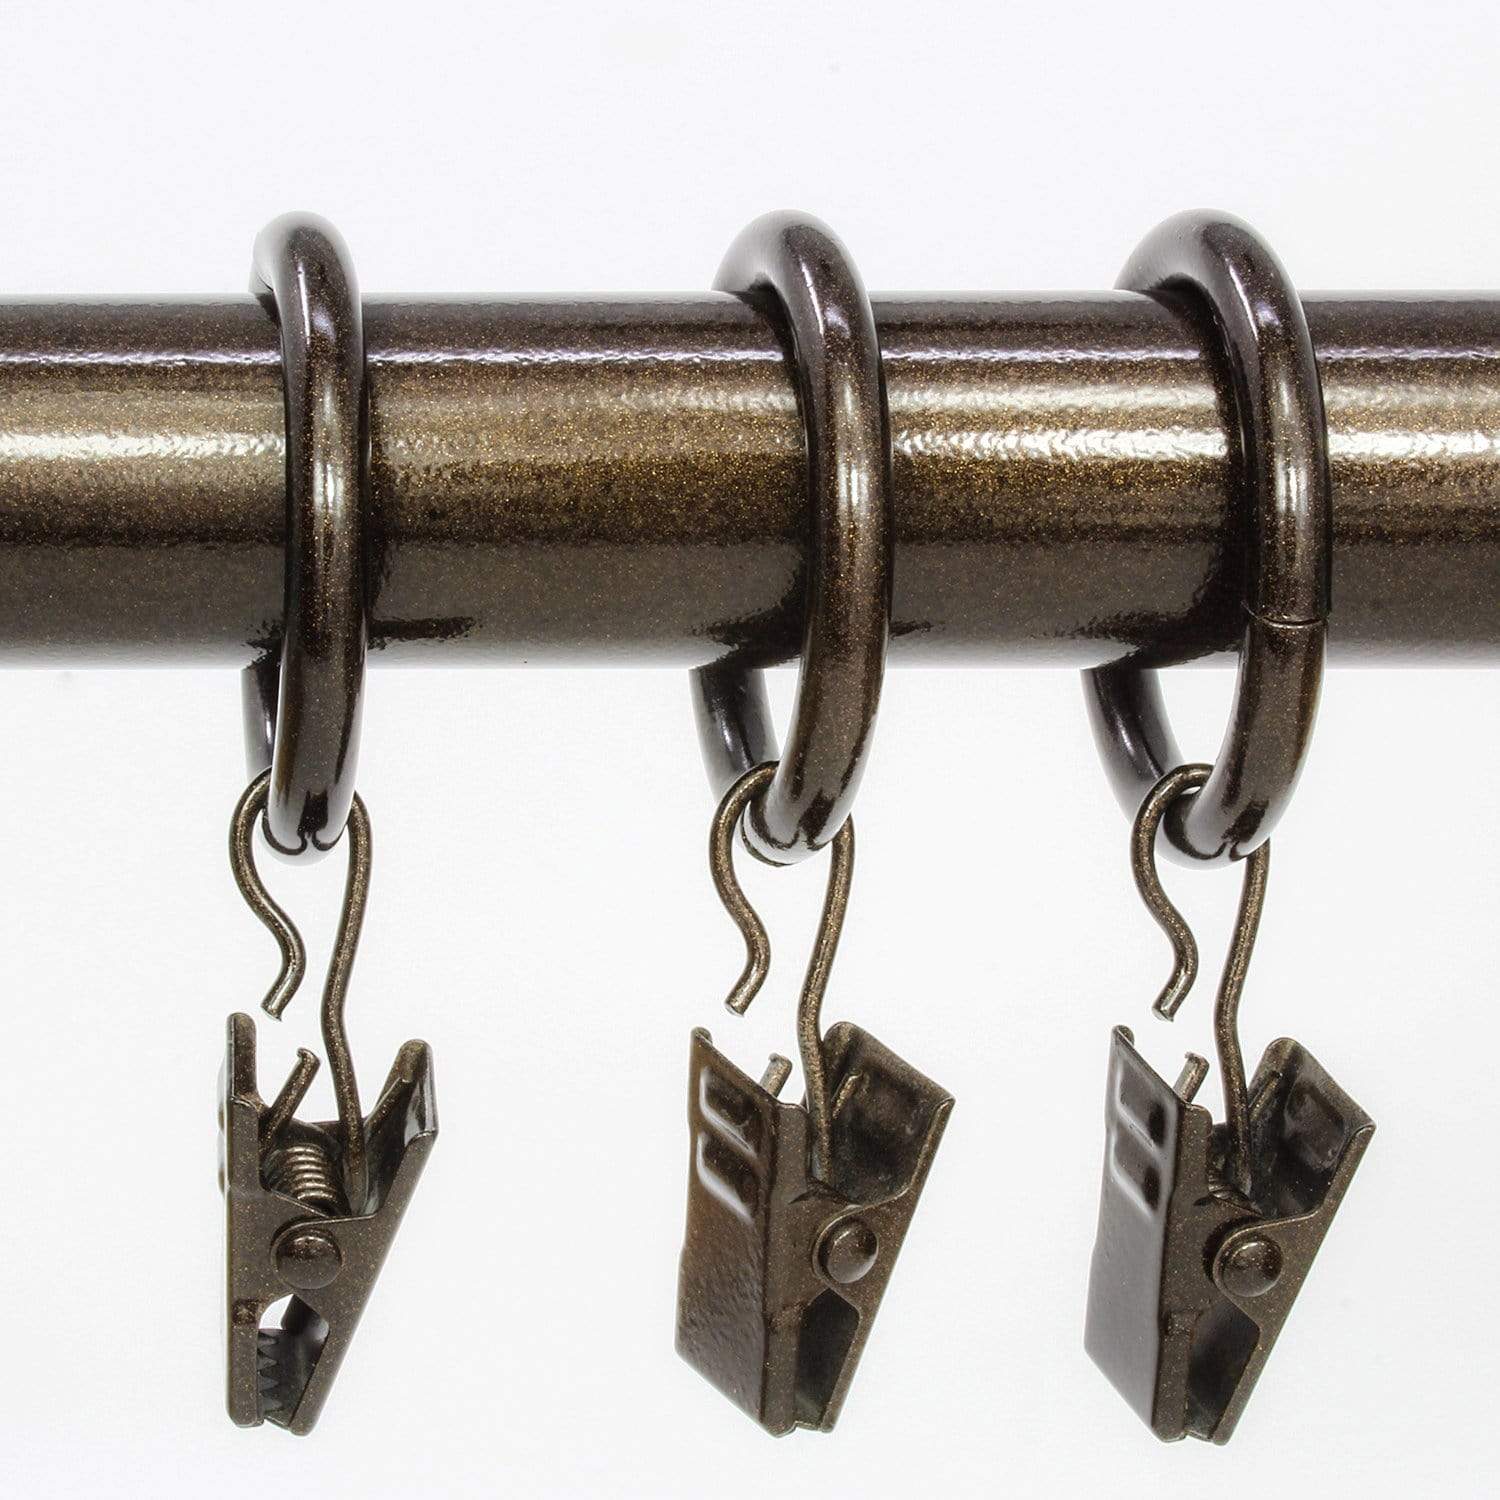 Metal Curtain Clip Rings 2 inch Interior Diameter Set of 14 (Bronze Antiqued)